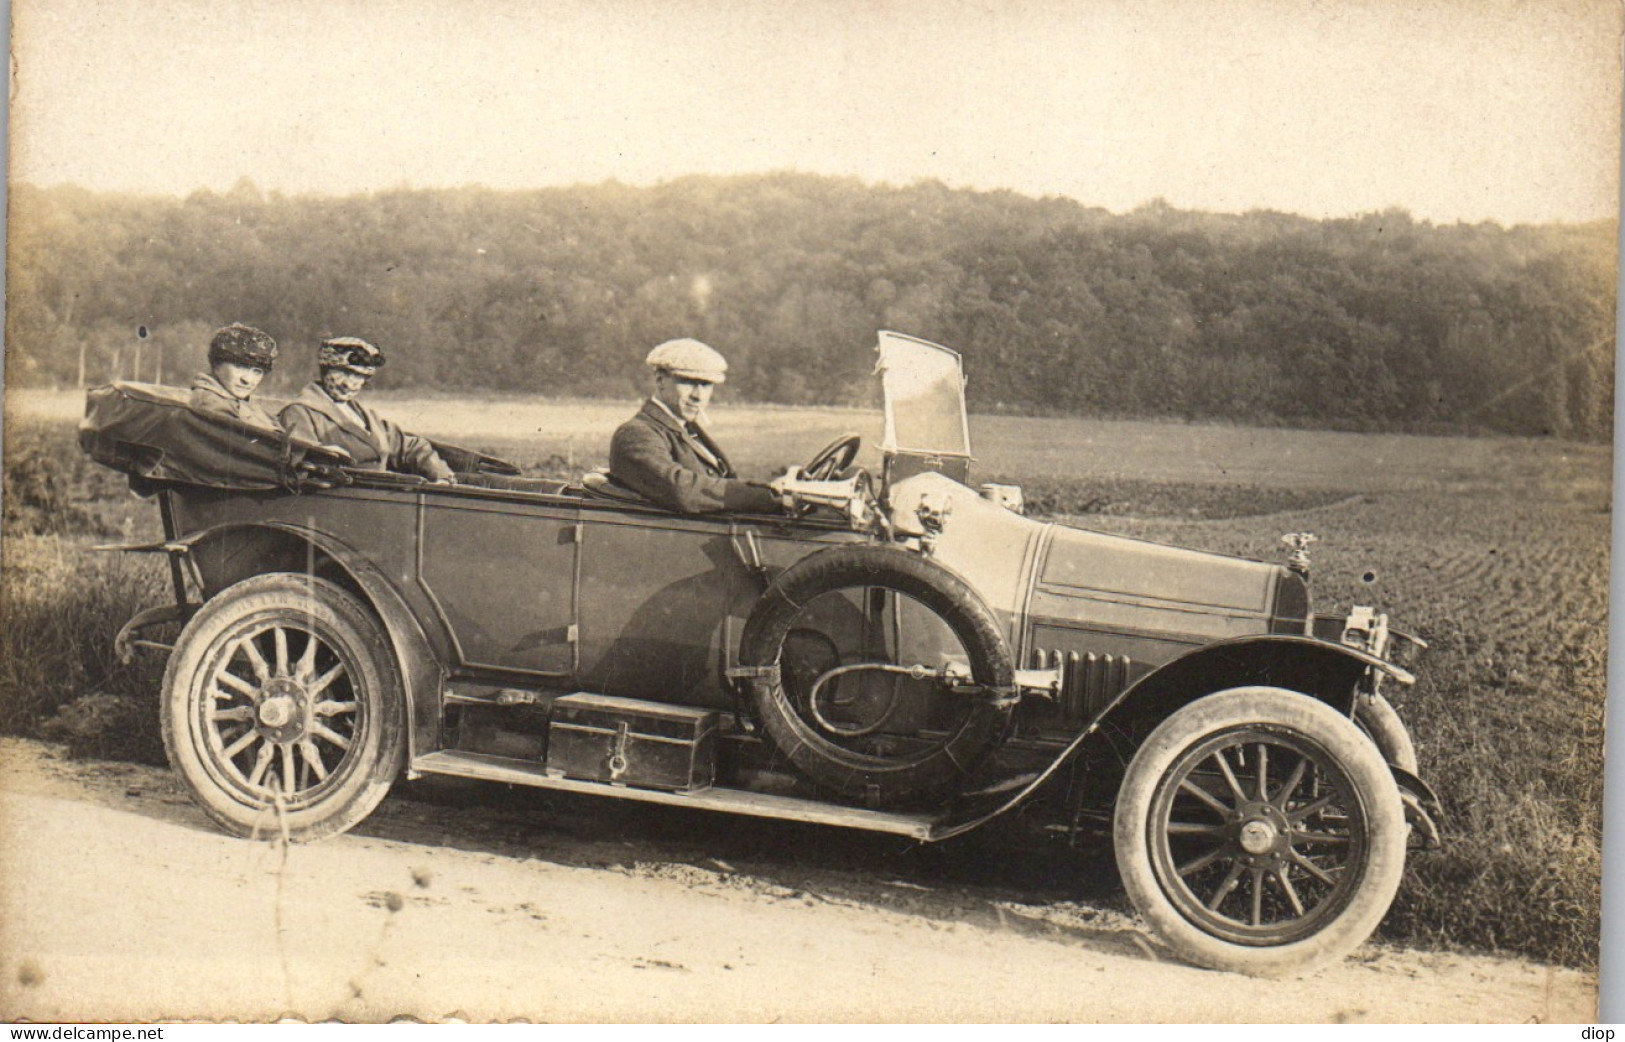 Photographie Photo Vintage Snapshot Amateur Automobile Voiture Cabriolet  Auto - Cars